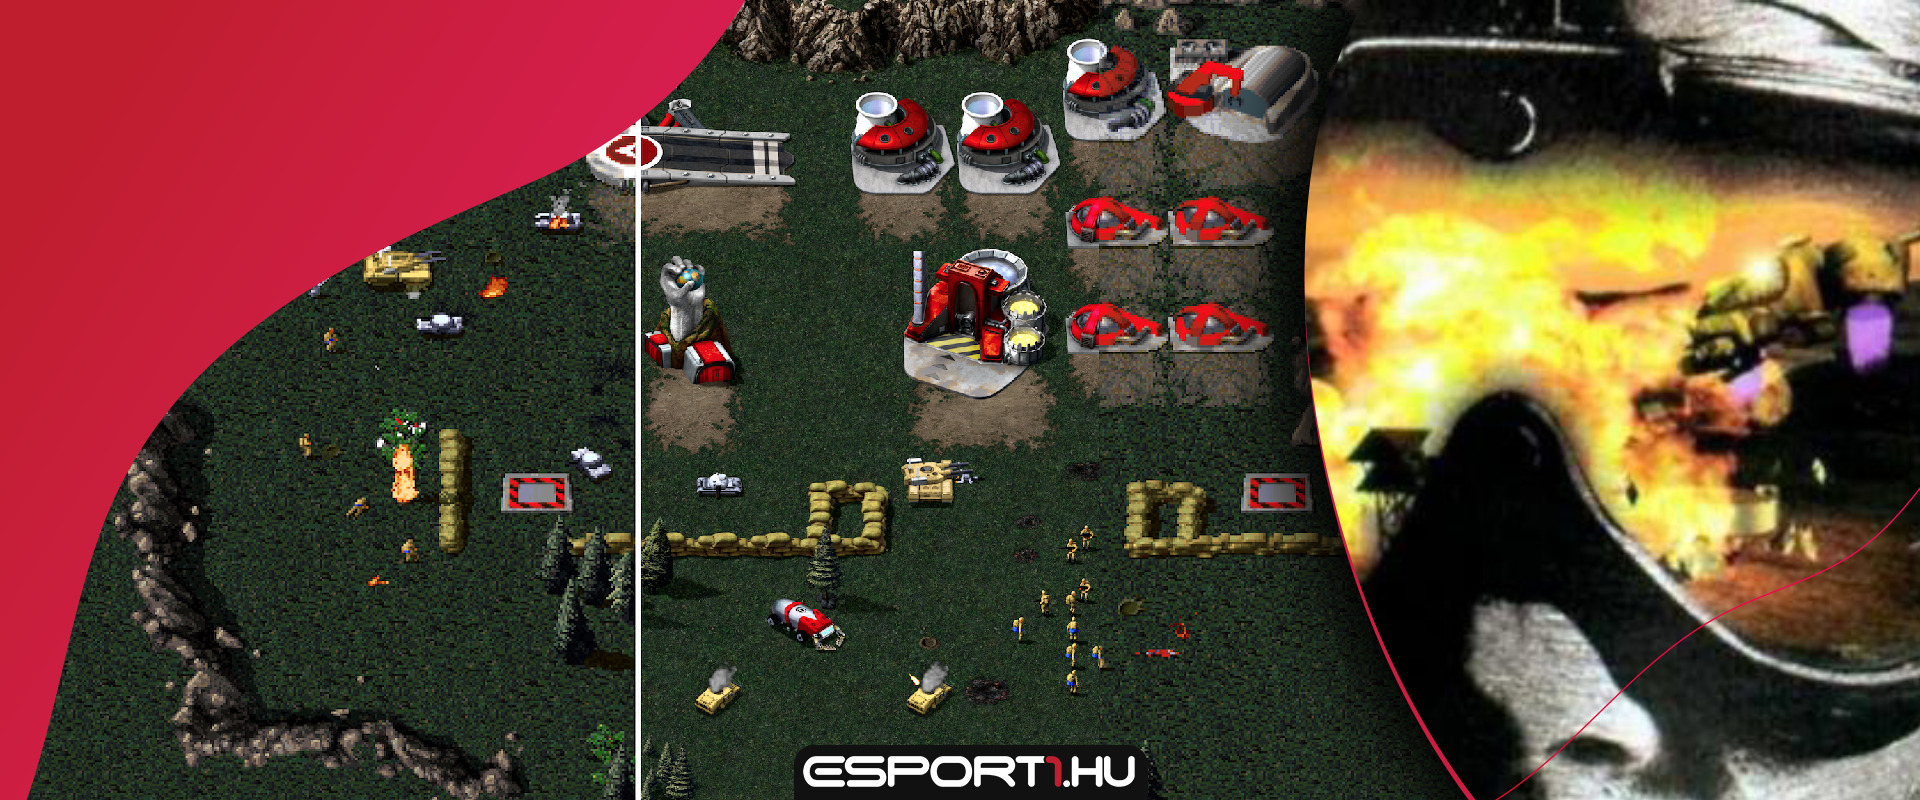 Nyáron megjelenik az RTS játékok atyja, a Command & Conquer Remastered verziója!